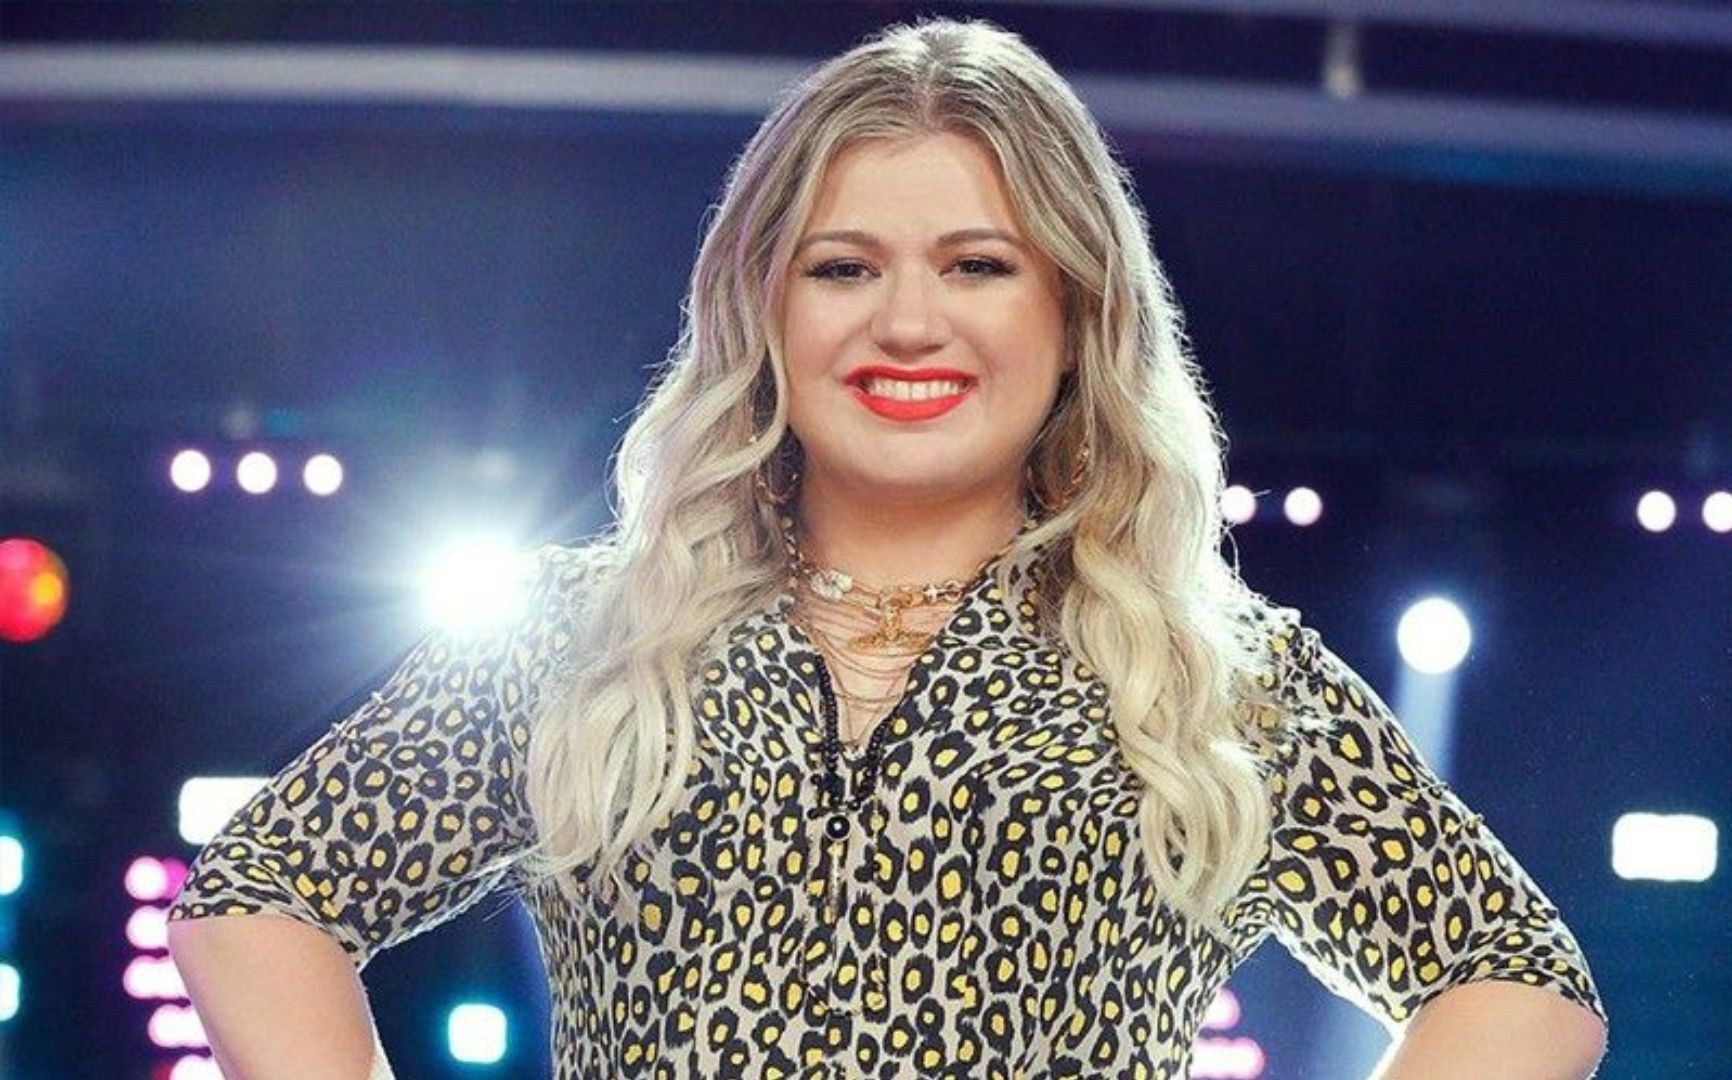 Kelly Clarkson looks back on 20 years since 'American Idol' win